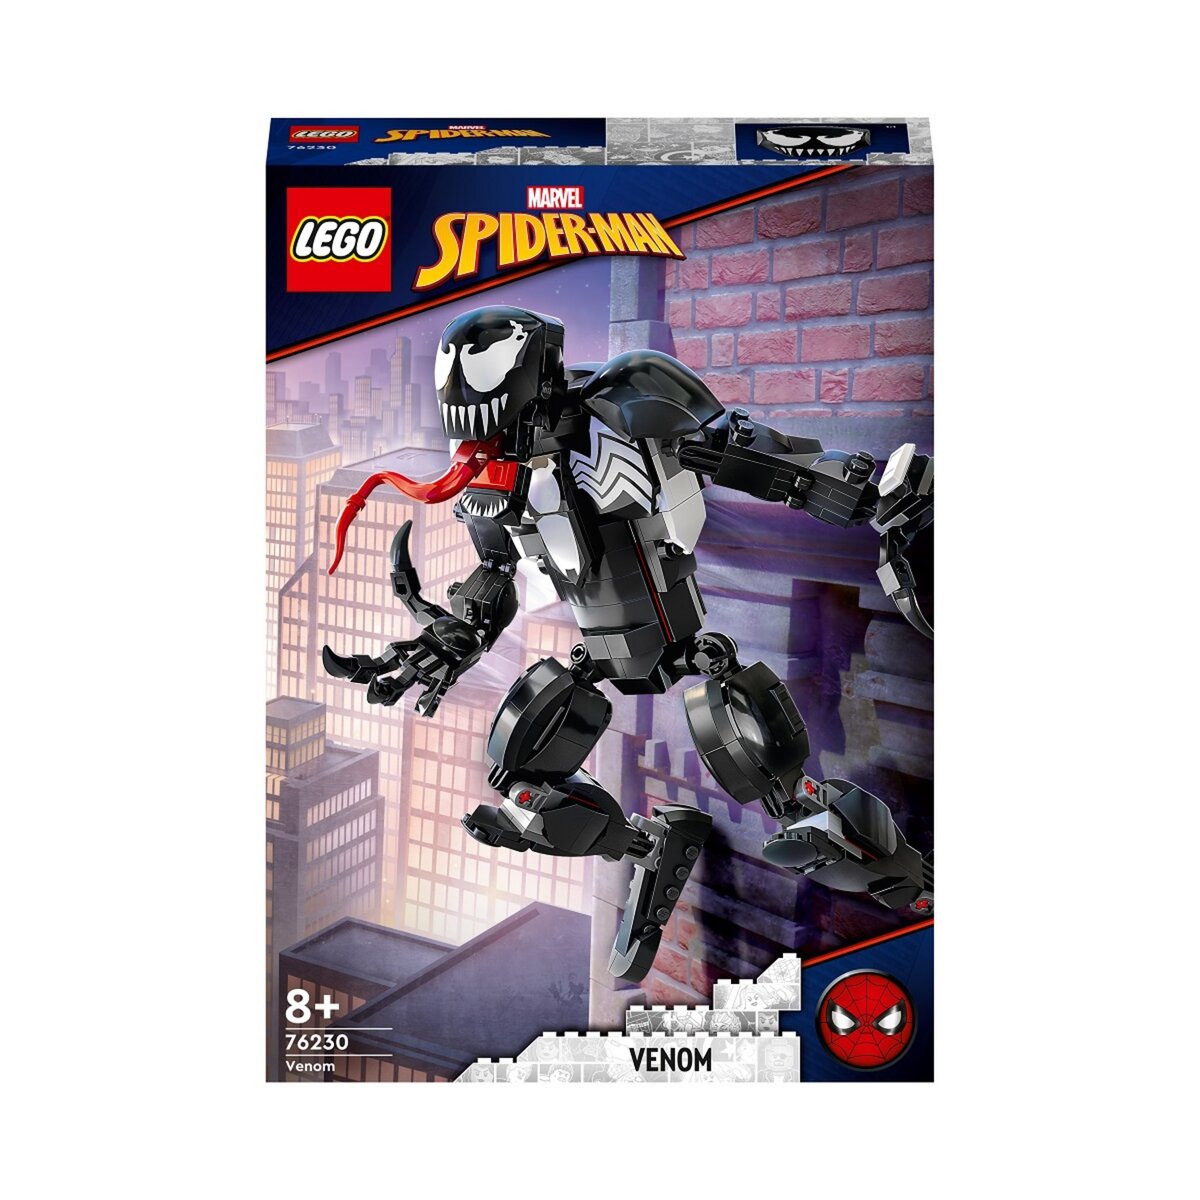 LEGO 76230 Venom Marvel Super Heroes Jouet Enfants 8 Ans, l'Ennemi de Spider-Man, Minifigurine à Construire, Cadeau Super-Héros